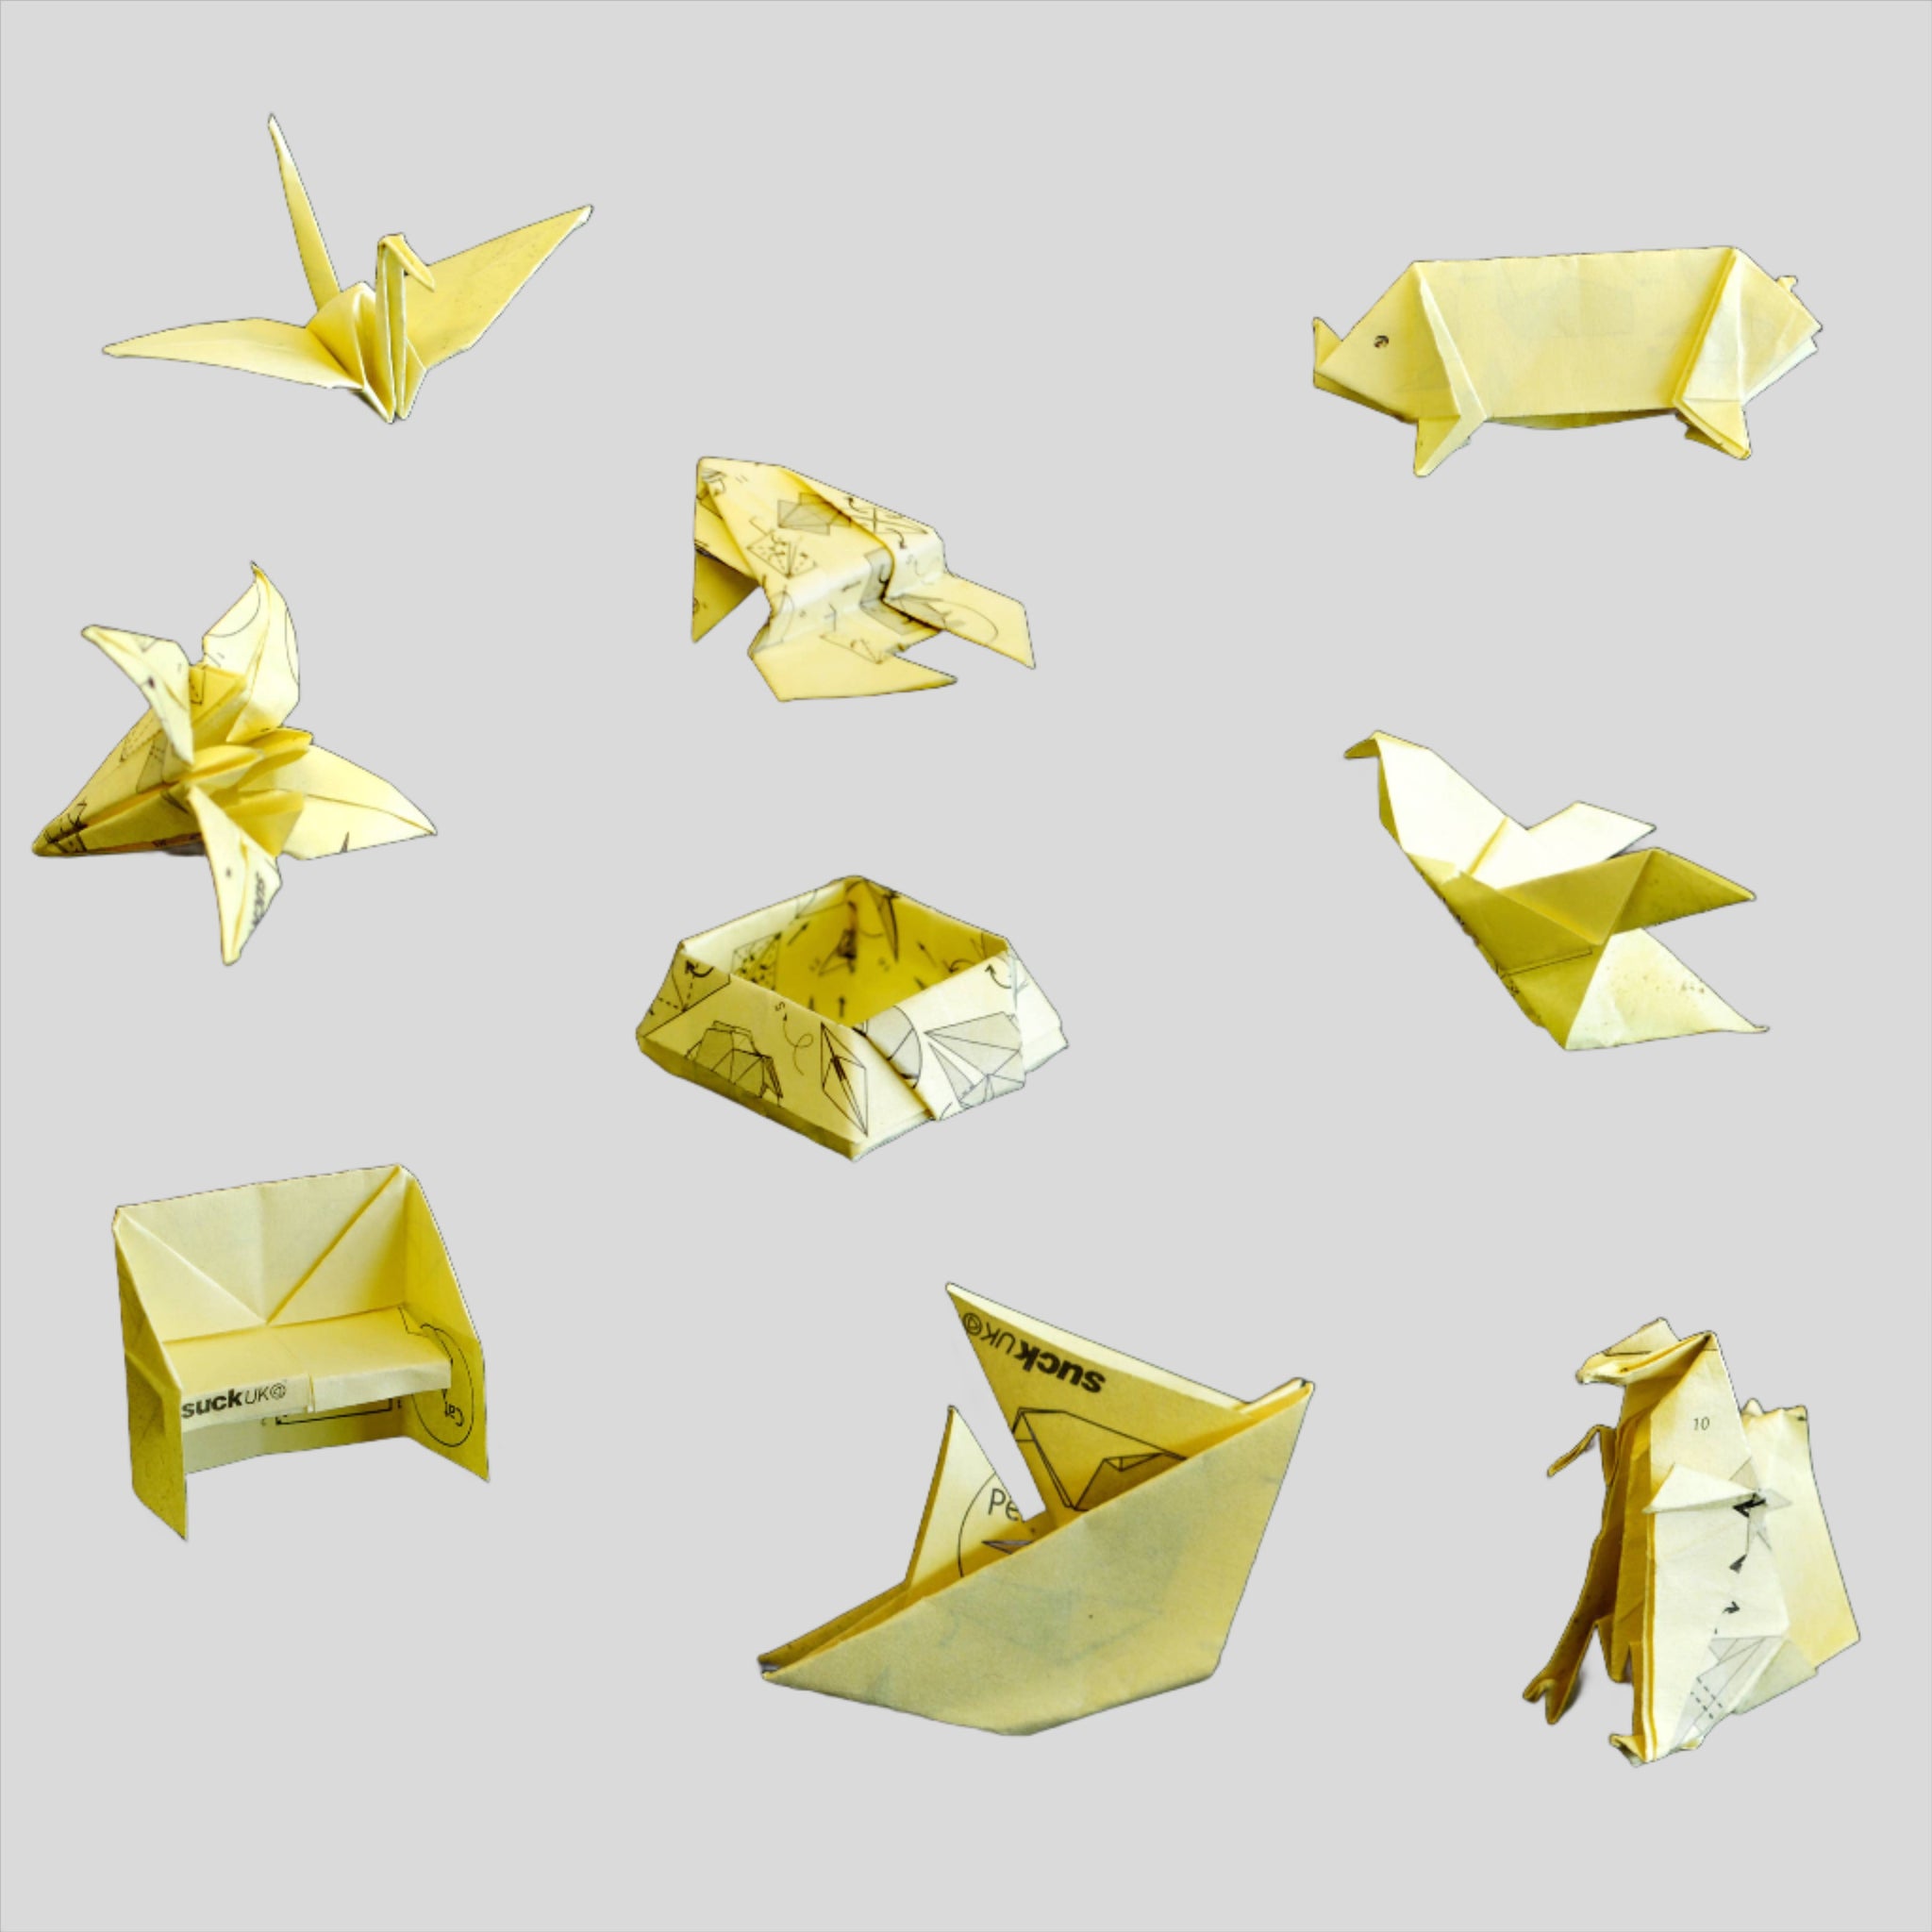 Origami Sticky Note